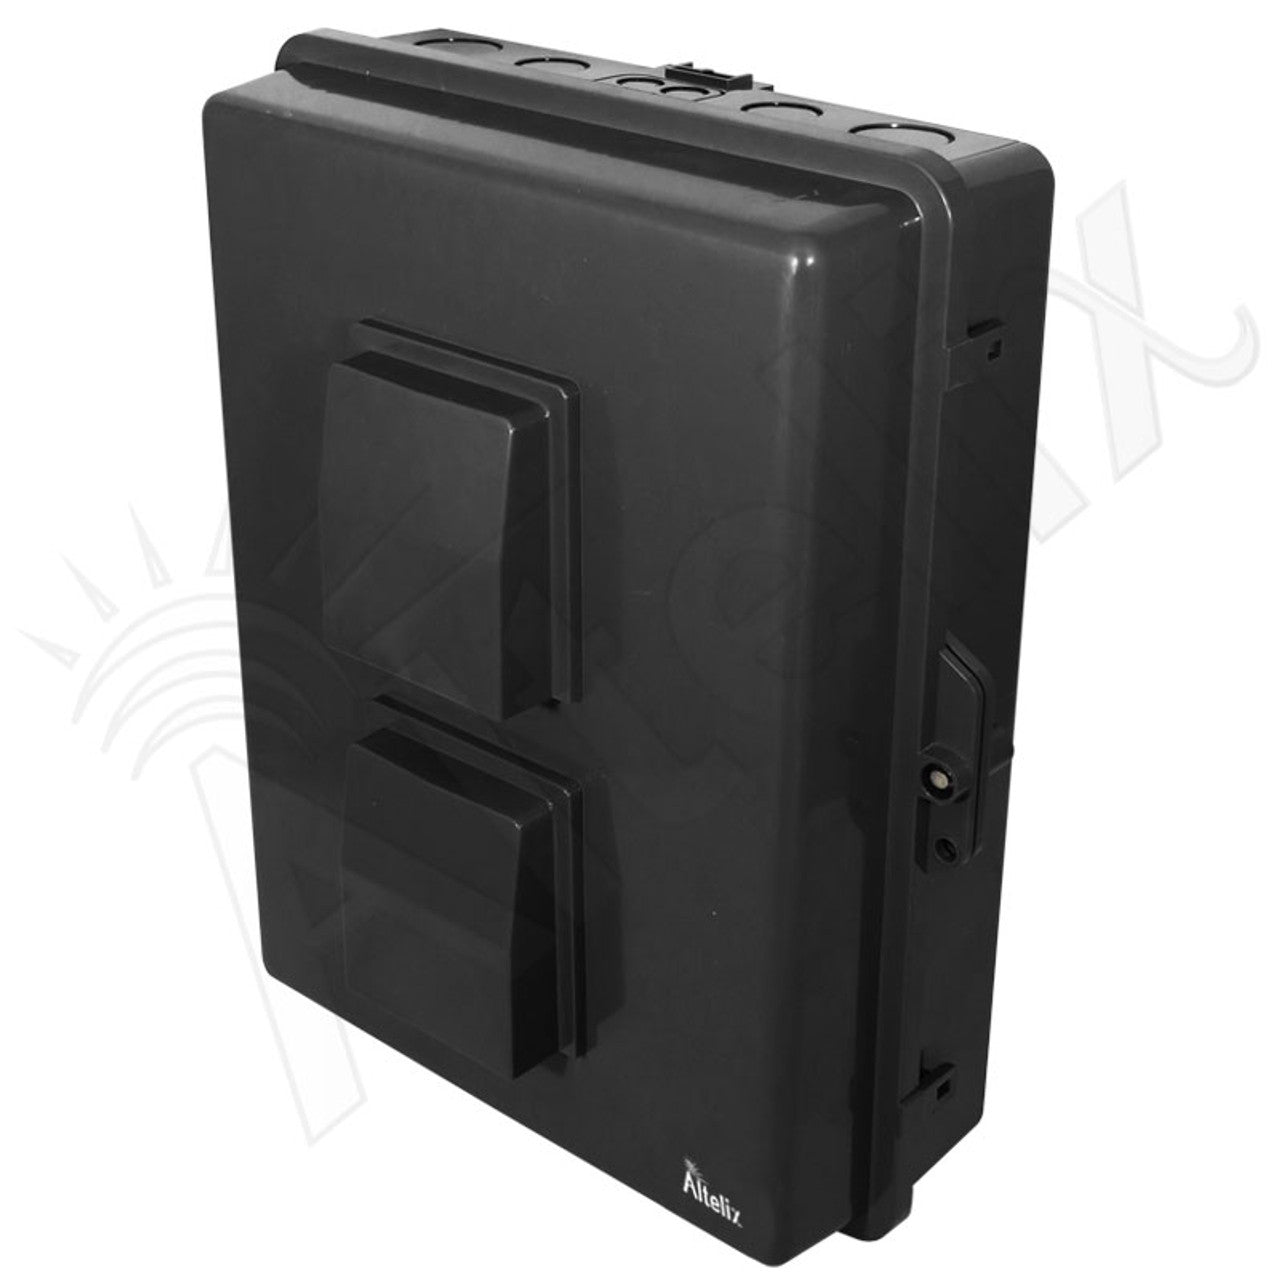 Buy black Altelix 17x14x6 PC + ABS Weatherproof Vented NEMA Enclosure with Hinged Door